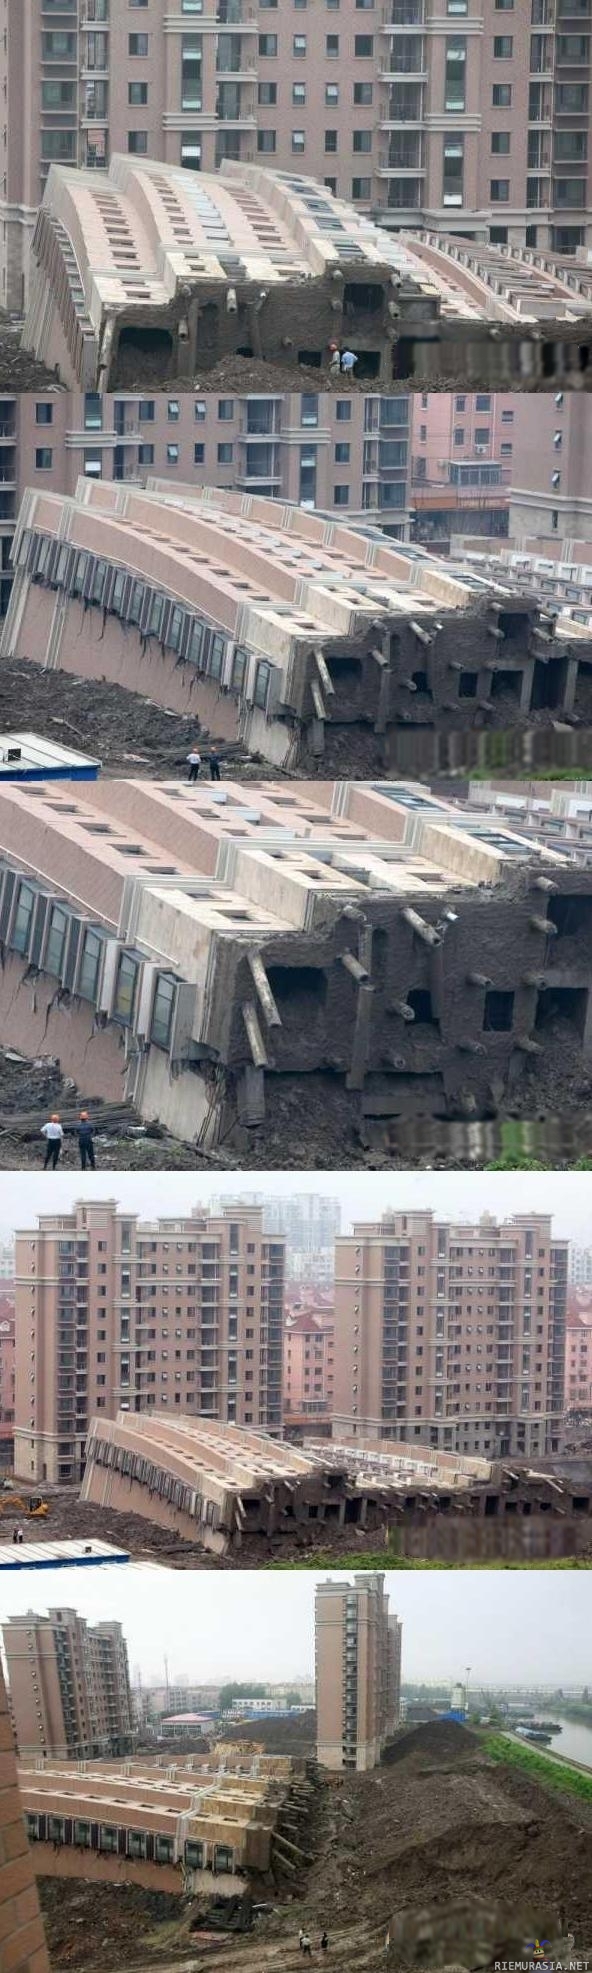 Kiinassa - Rakennus kaatunu ku tukipilarit petti...